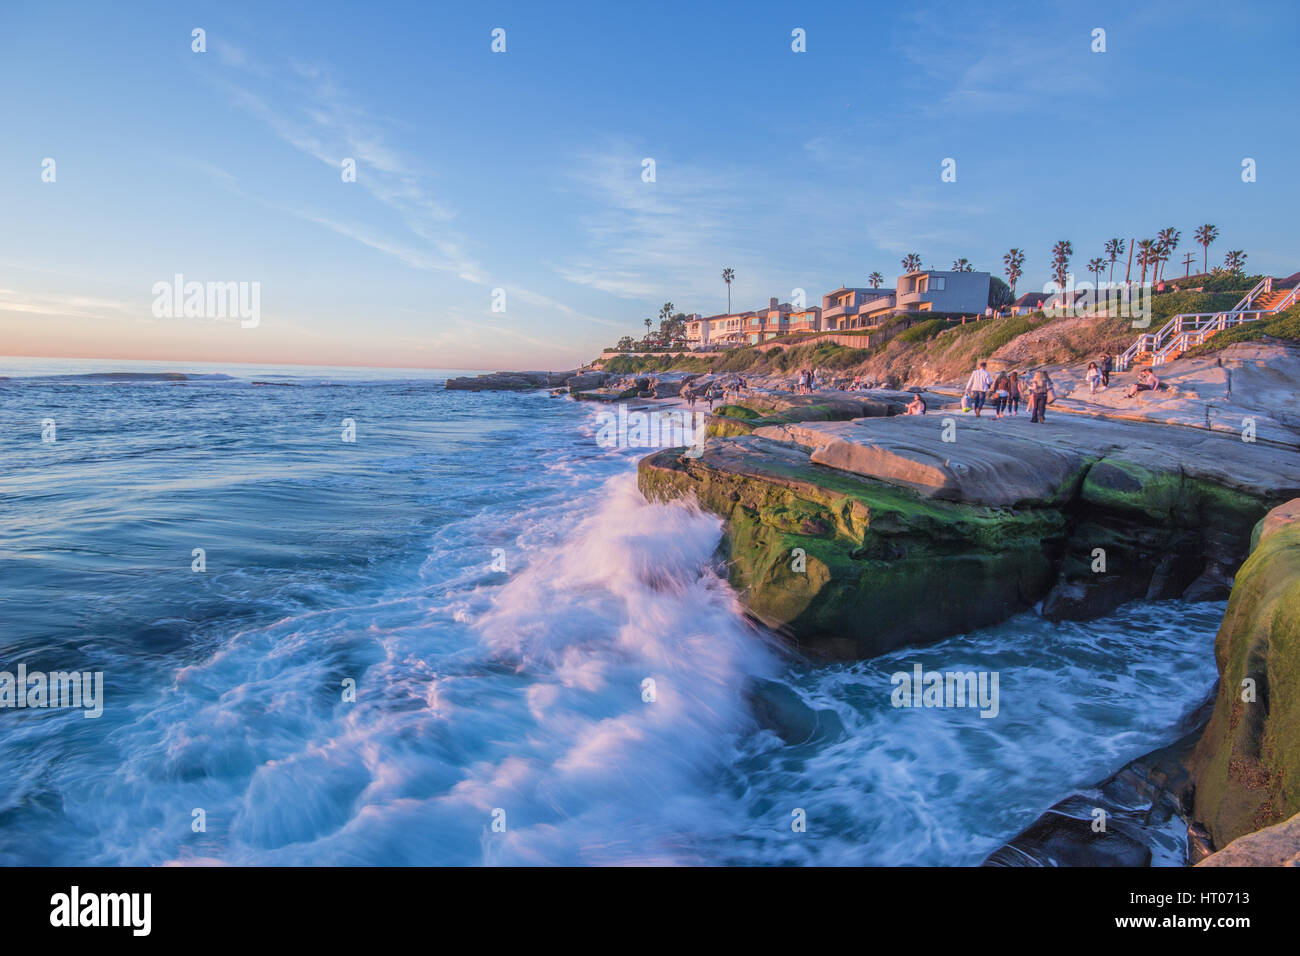 San Diego, wo Sie Surfen den Pazifischen Ozean genießen können. Tolles Wetter erstaunlichste & freundliche Menschen. Stockfoto